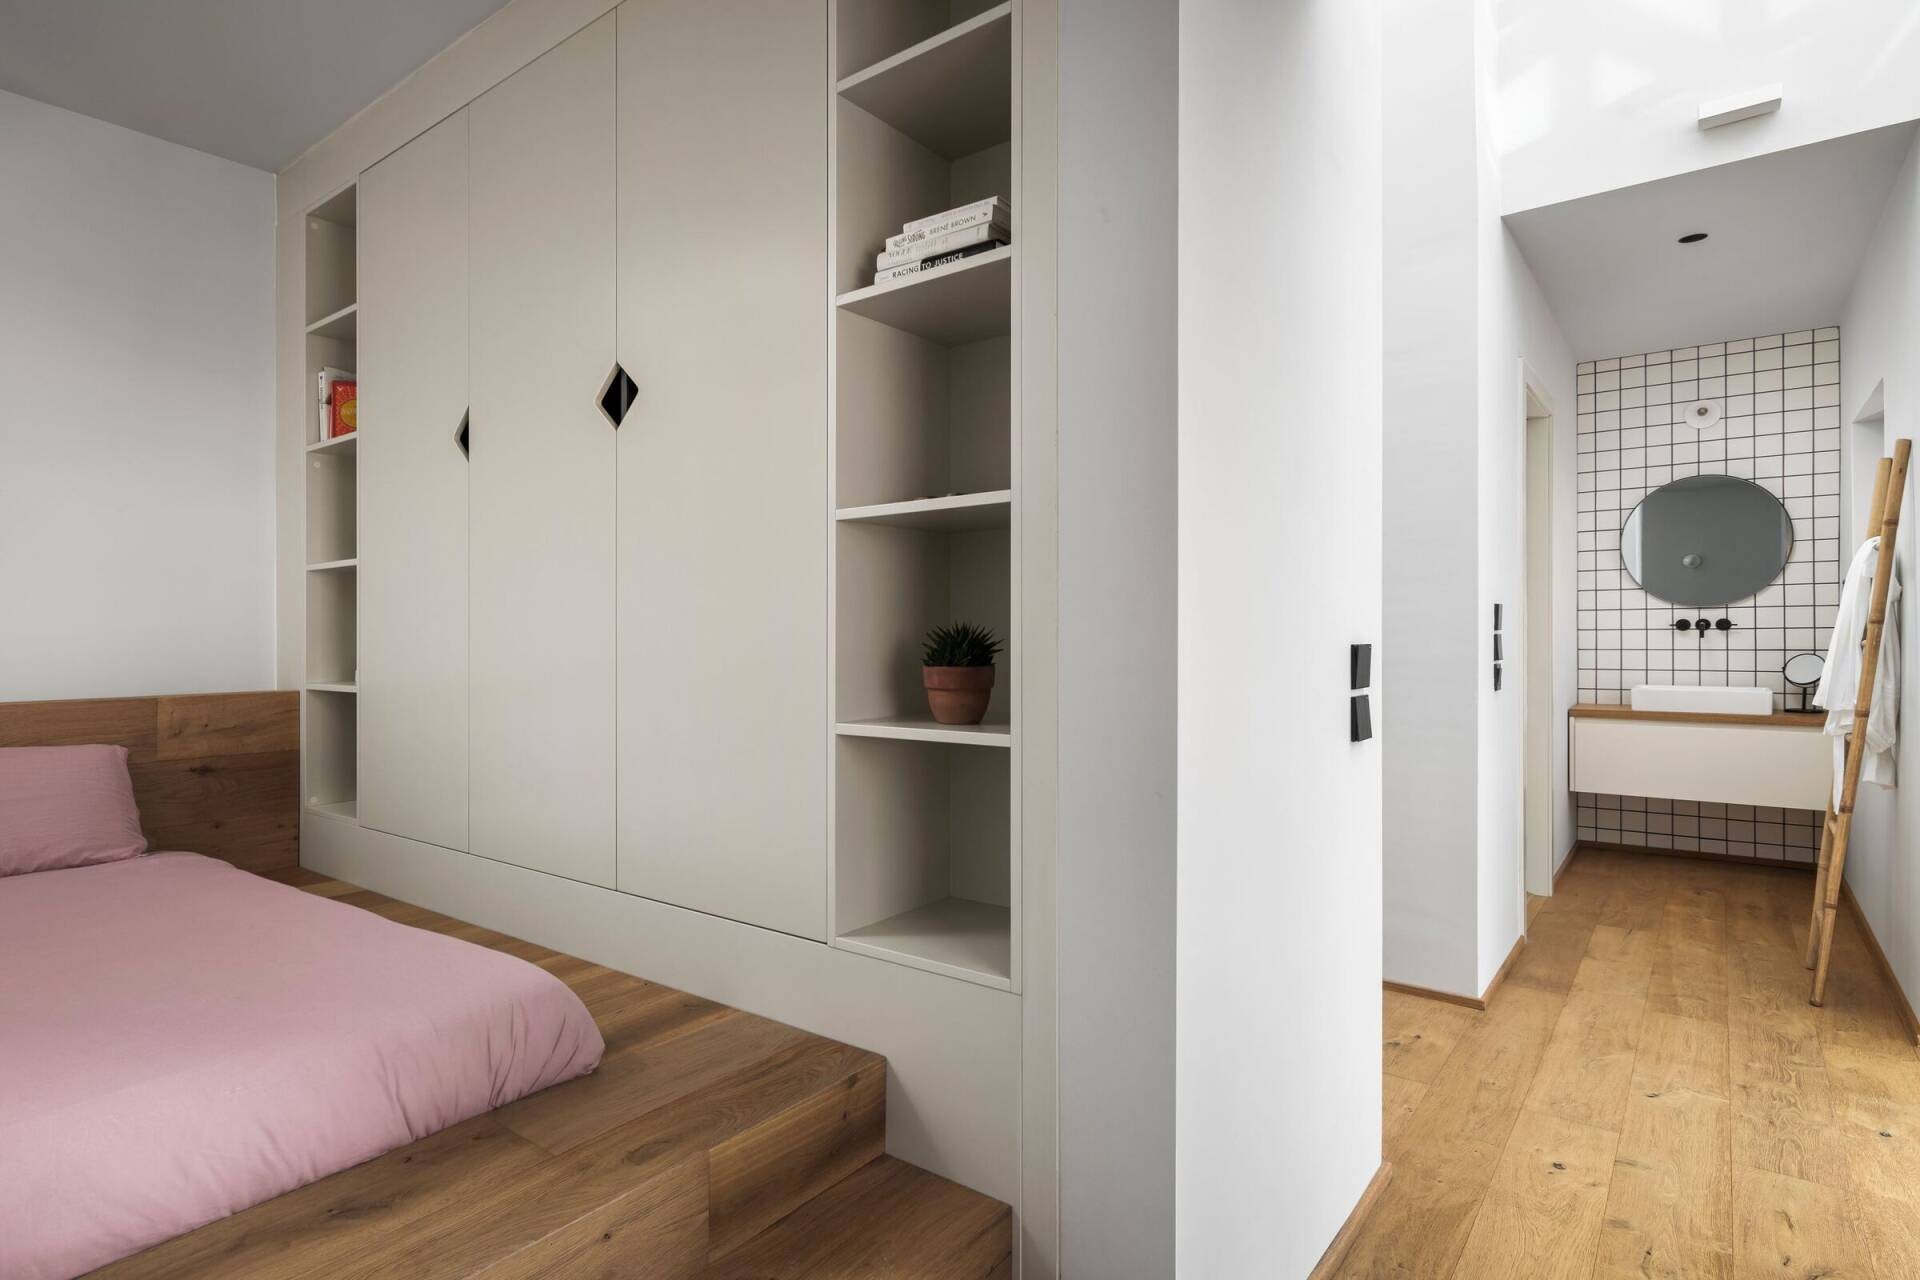 
Phòng ngủ đơn giản với các chi tiết hình học giao thoa khéo léo, được sử dụng màu đen là điểm nhấn trên nền trắng của căn phòng
